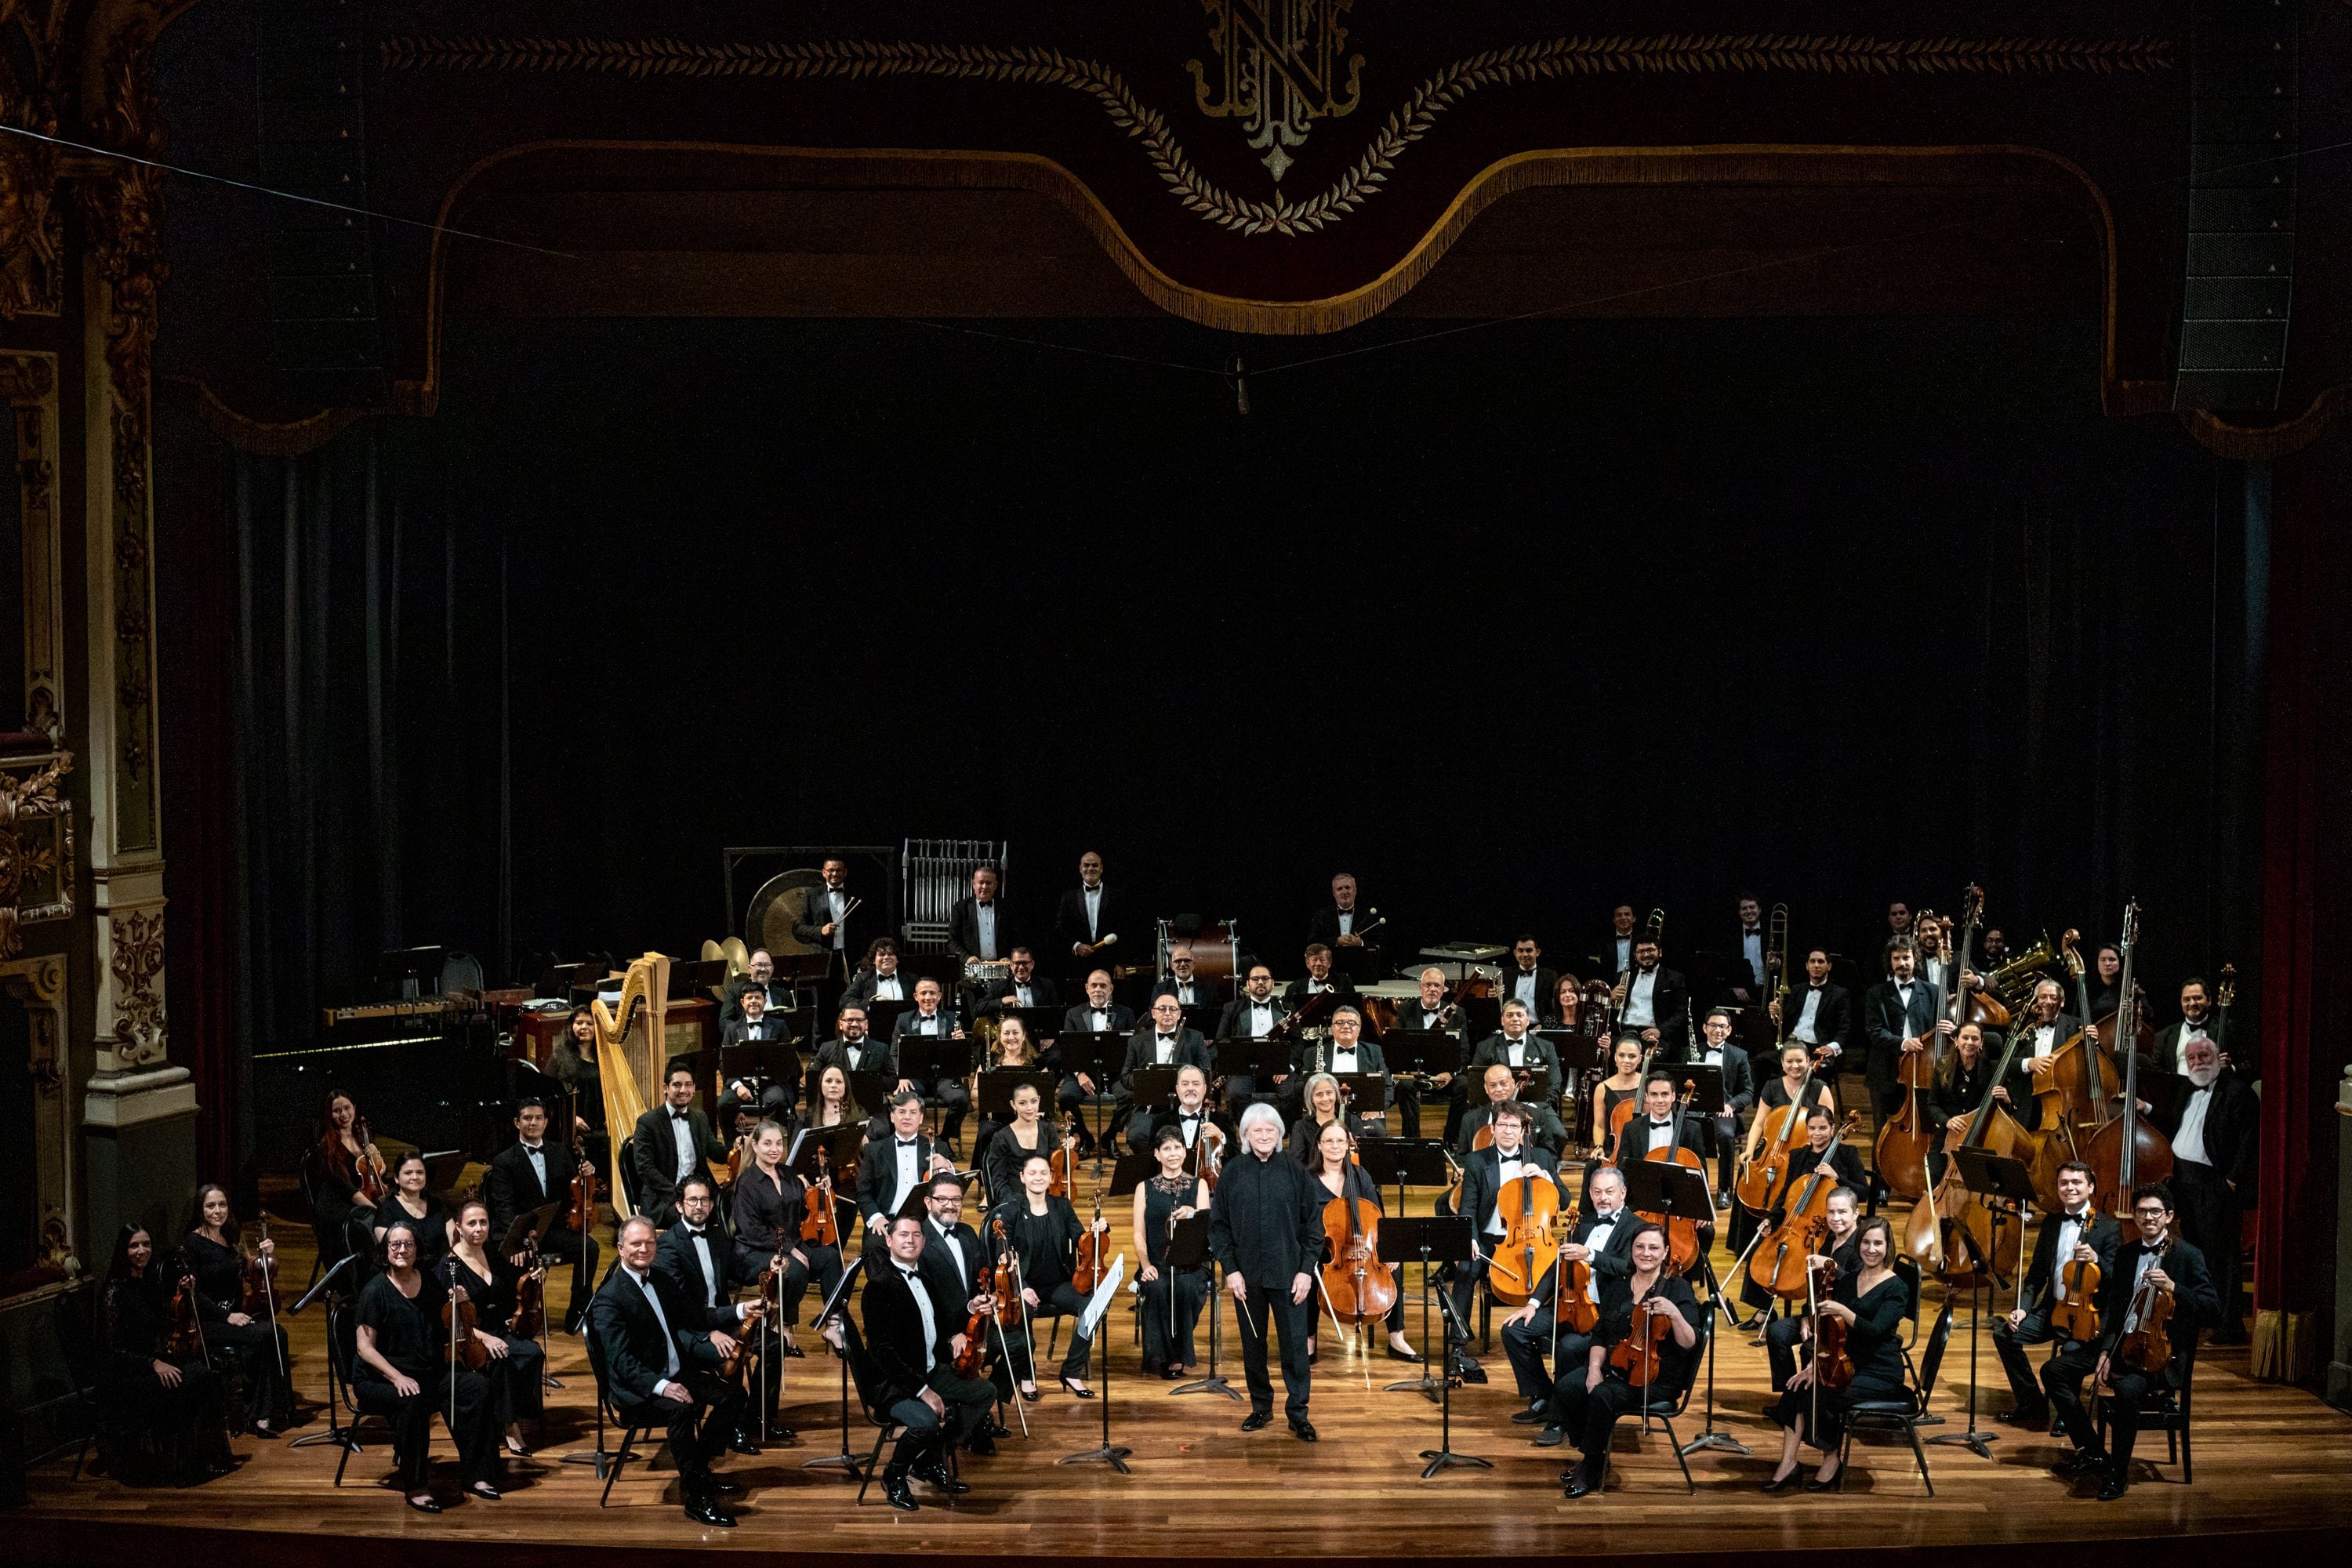 El 'Réquiem de Verdi' contará con un total de 150 artistas en escena, convirtiéndose en uno de los espectáculos más destacados del año, en el que la OSNCR y el Coro Sinfónico Nacional unen fuerzas.